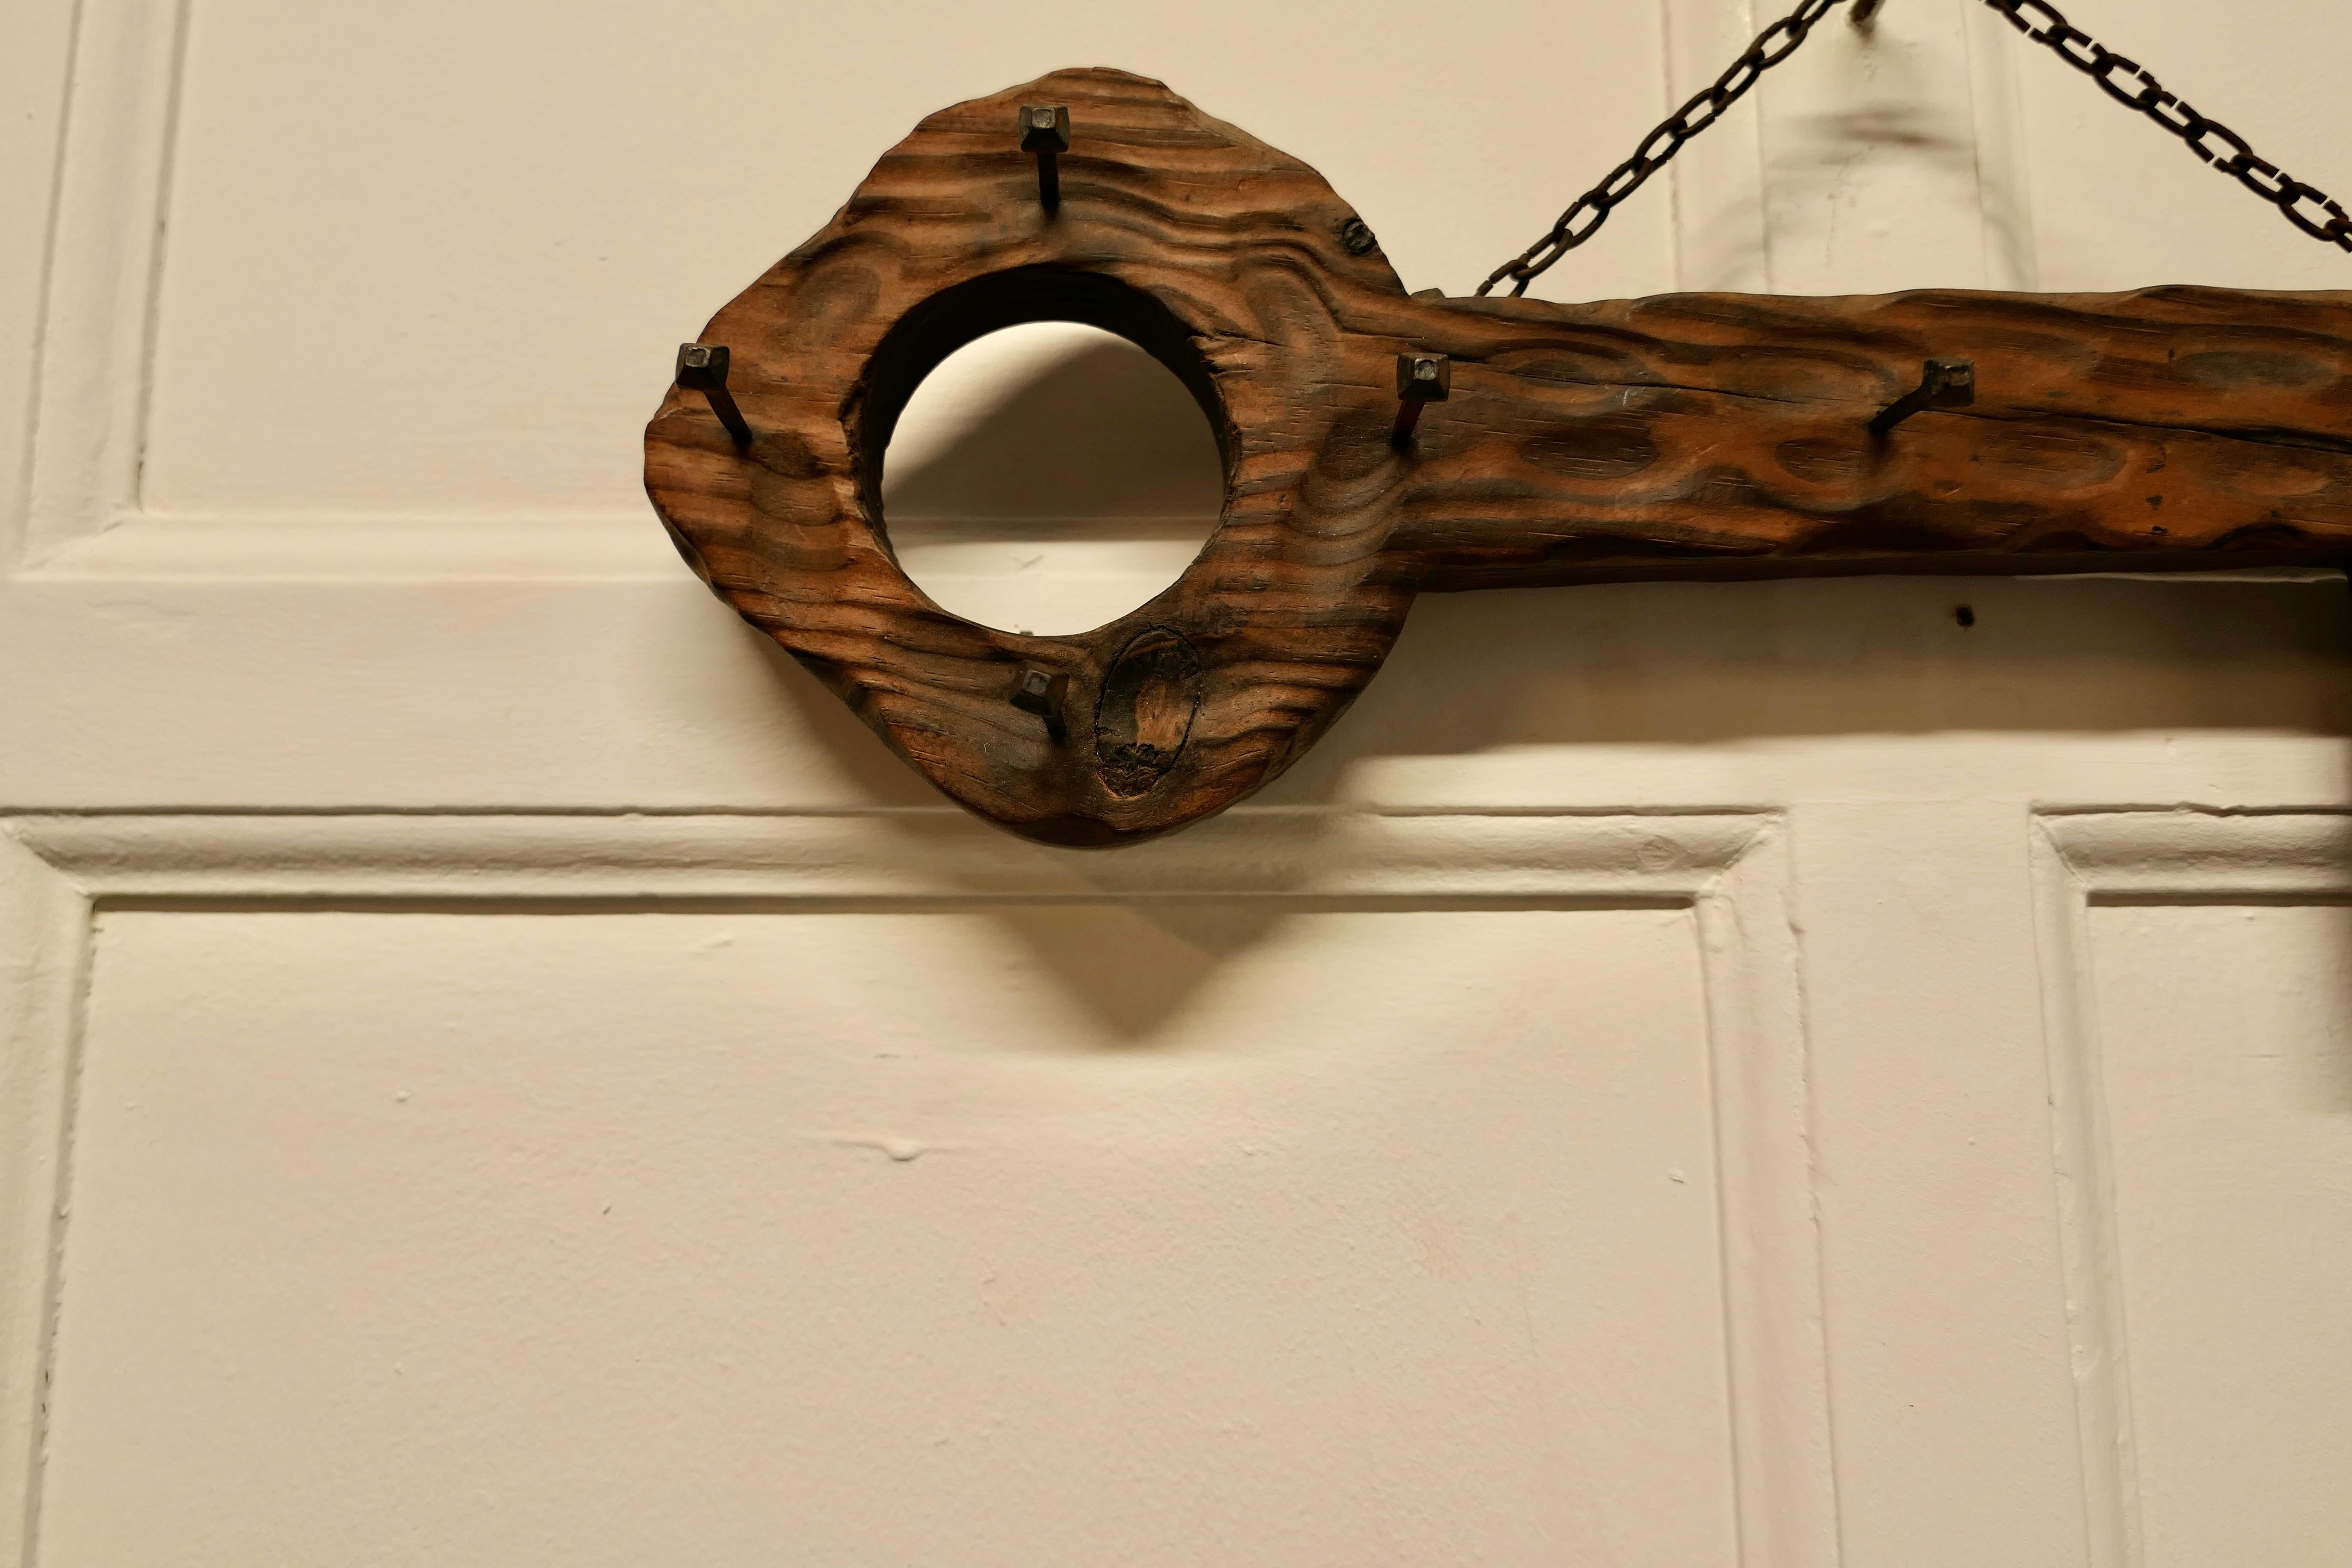 Grand porte-clés rustique en bois de cèdre

Sculpté dans une seule pièce de cèdre avec 8 crochets de clé en fer forgé.
Mesures : Le support mesure 6 pouces de haut, 20 pouces de long et 2,5 pouces de profondeur.
CC167.
  